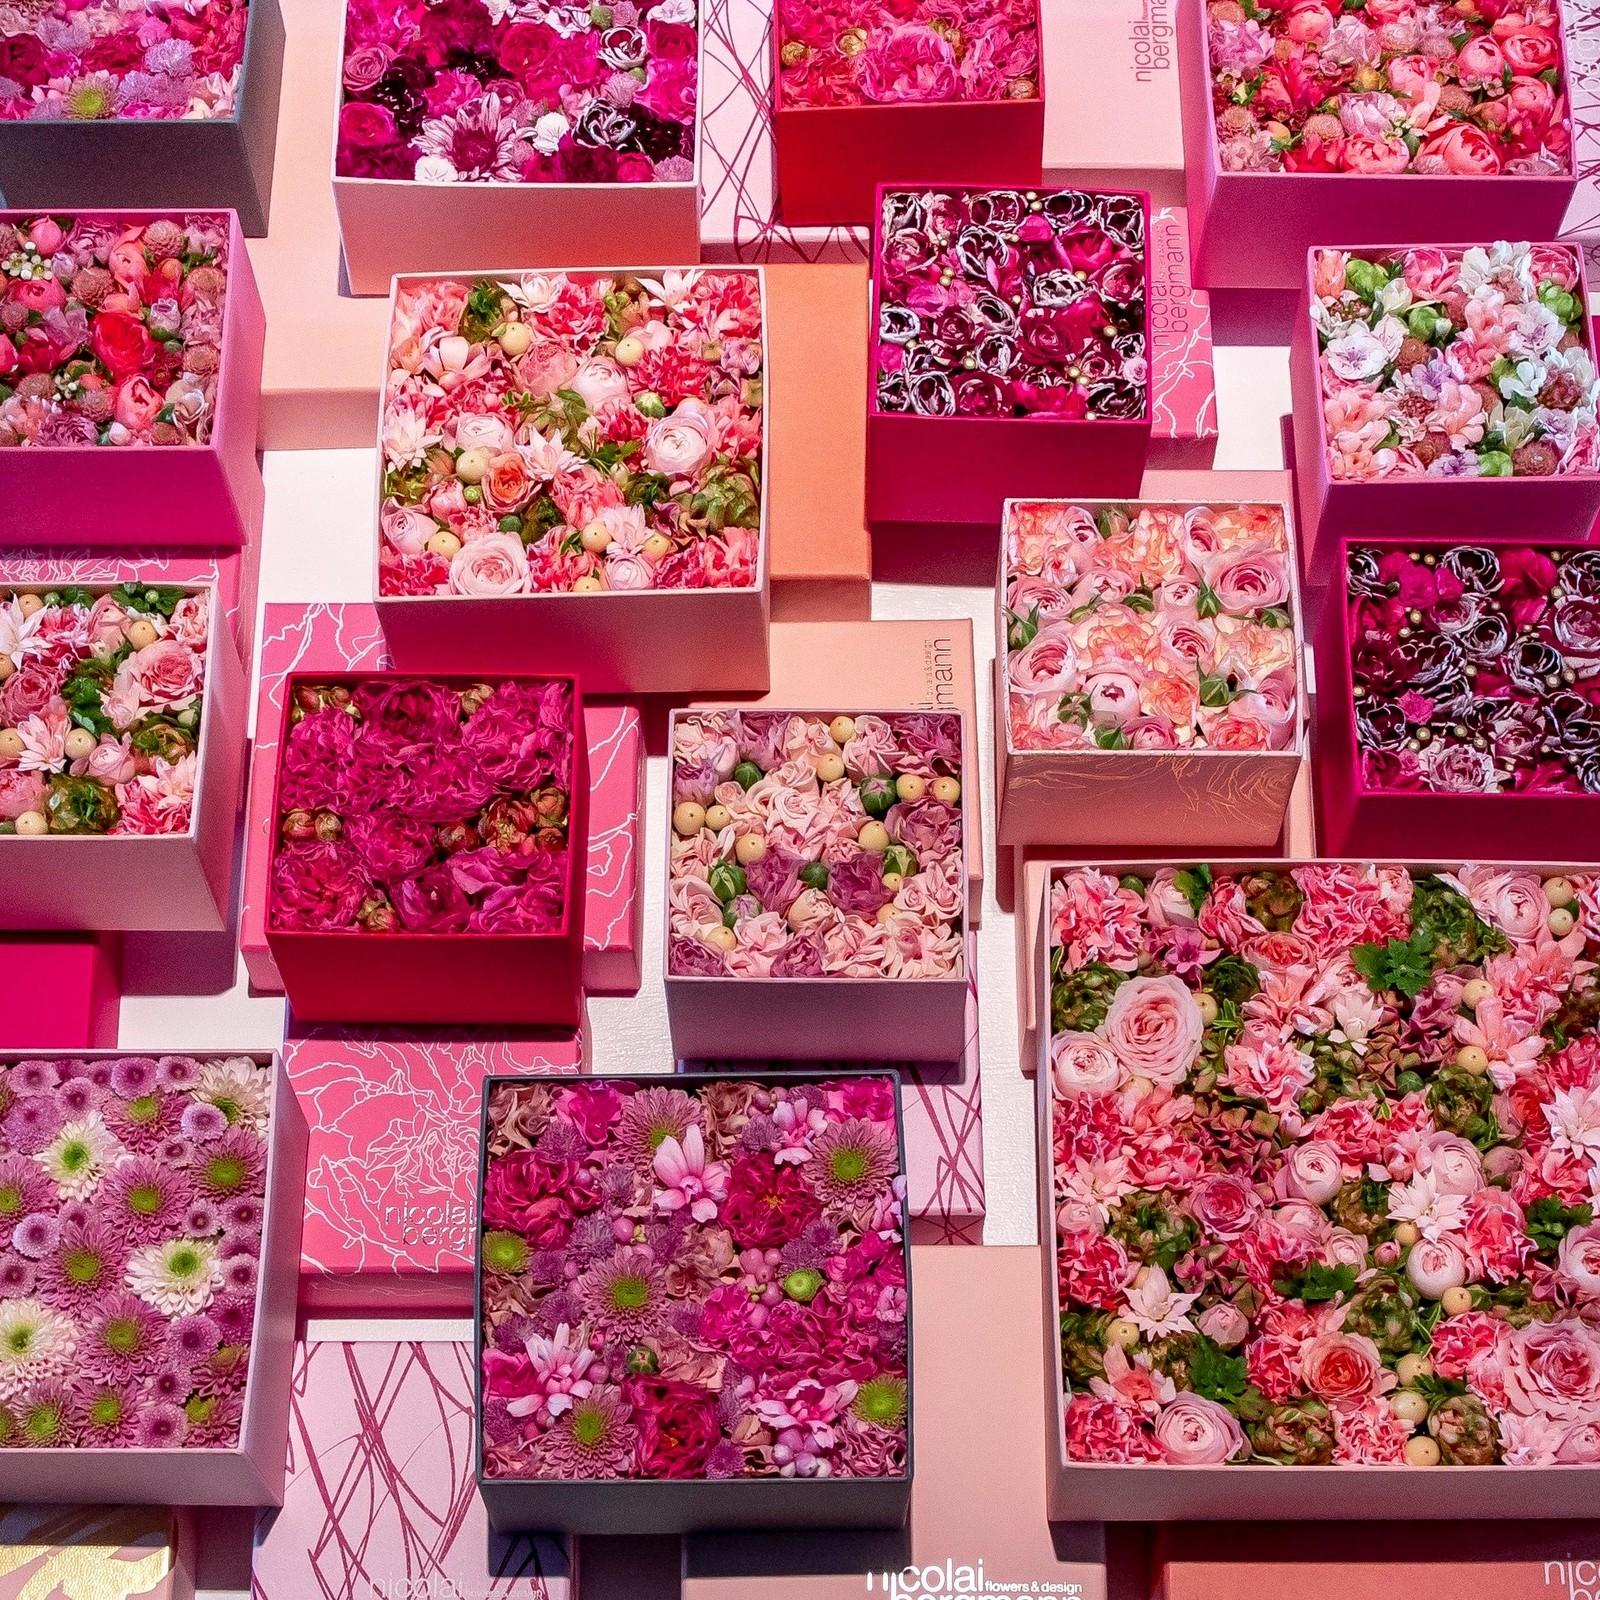 ニコライ・バーグマン作品展「THE FLOWER BOX EXHIBITION IN DAZAIFU」-2